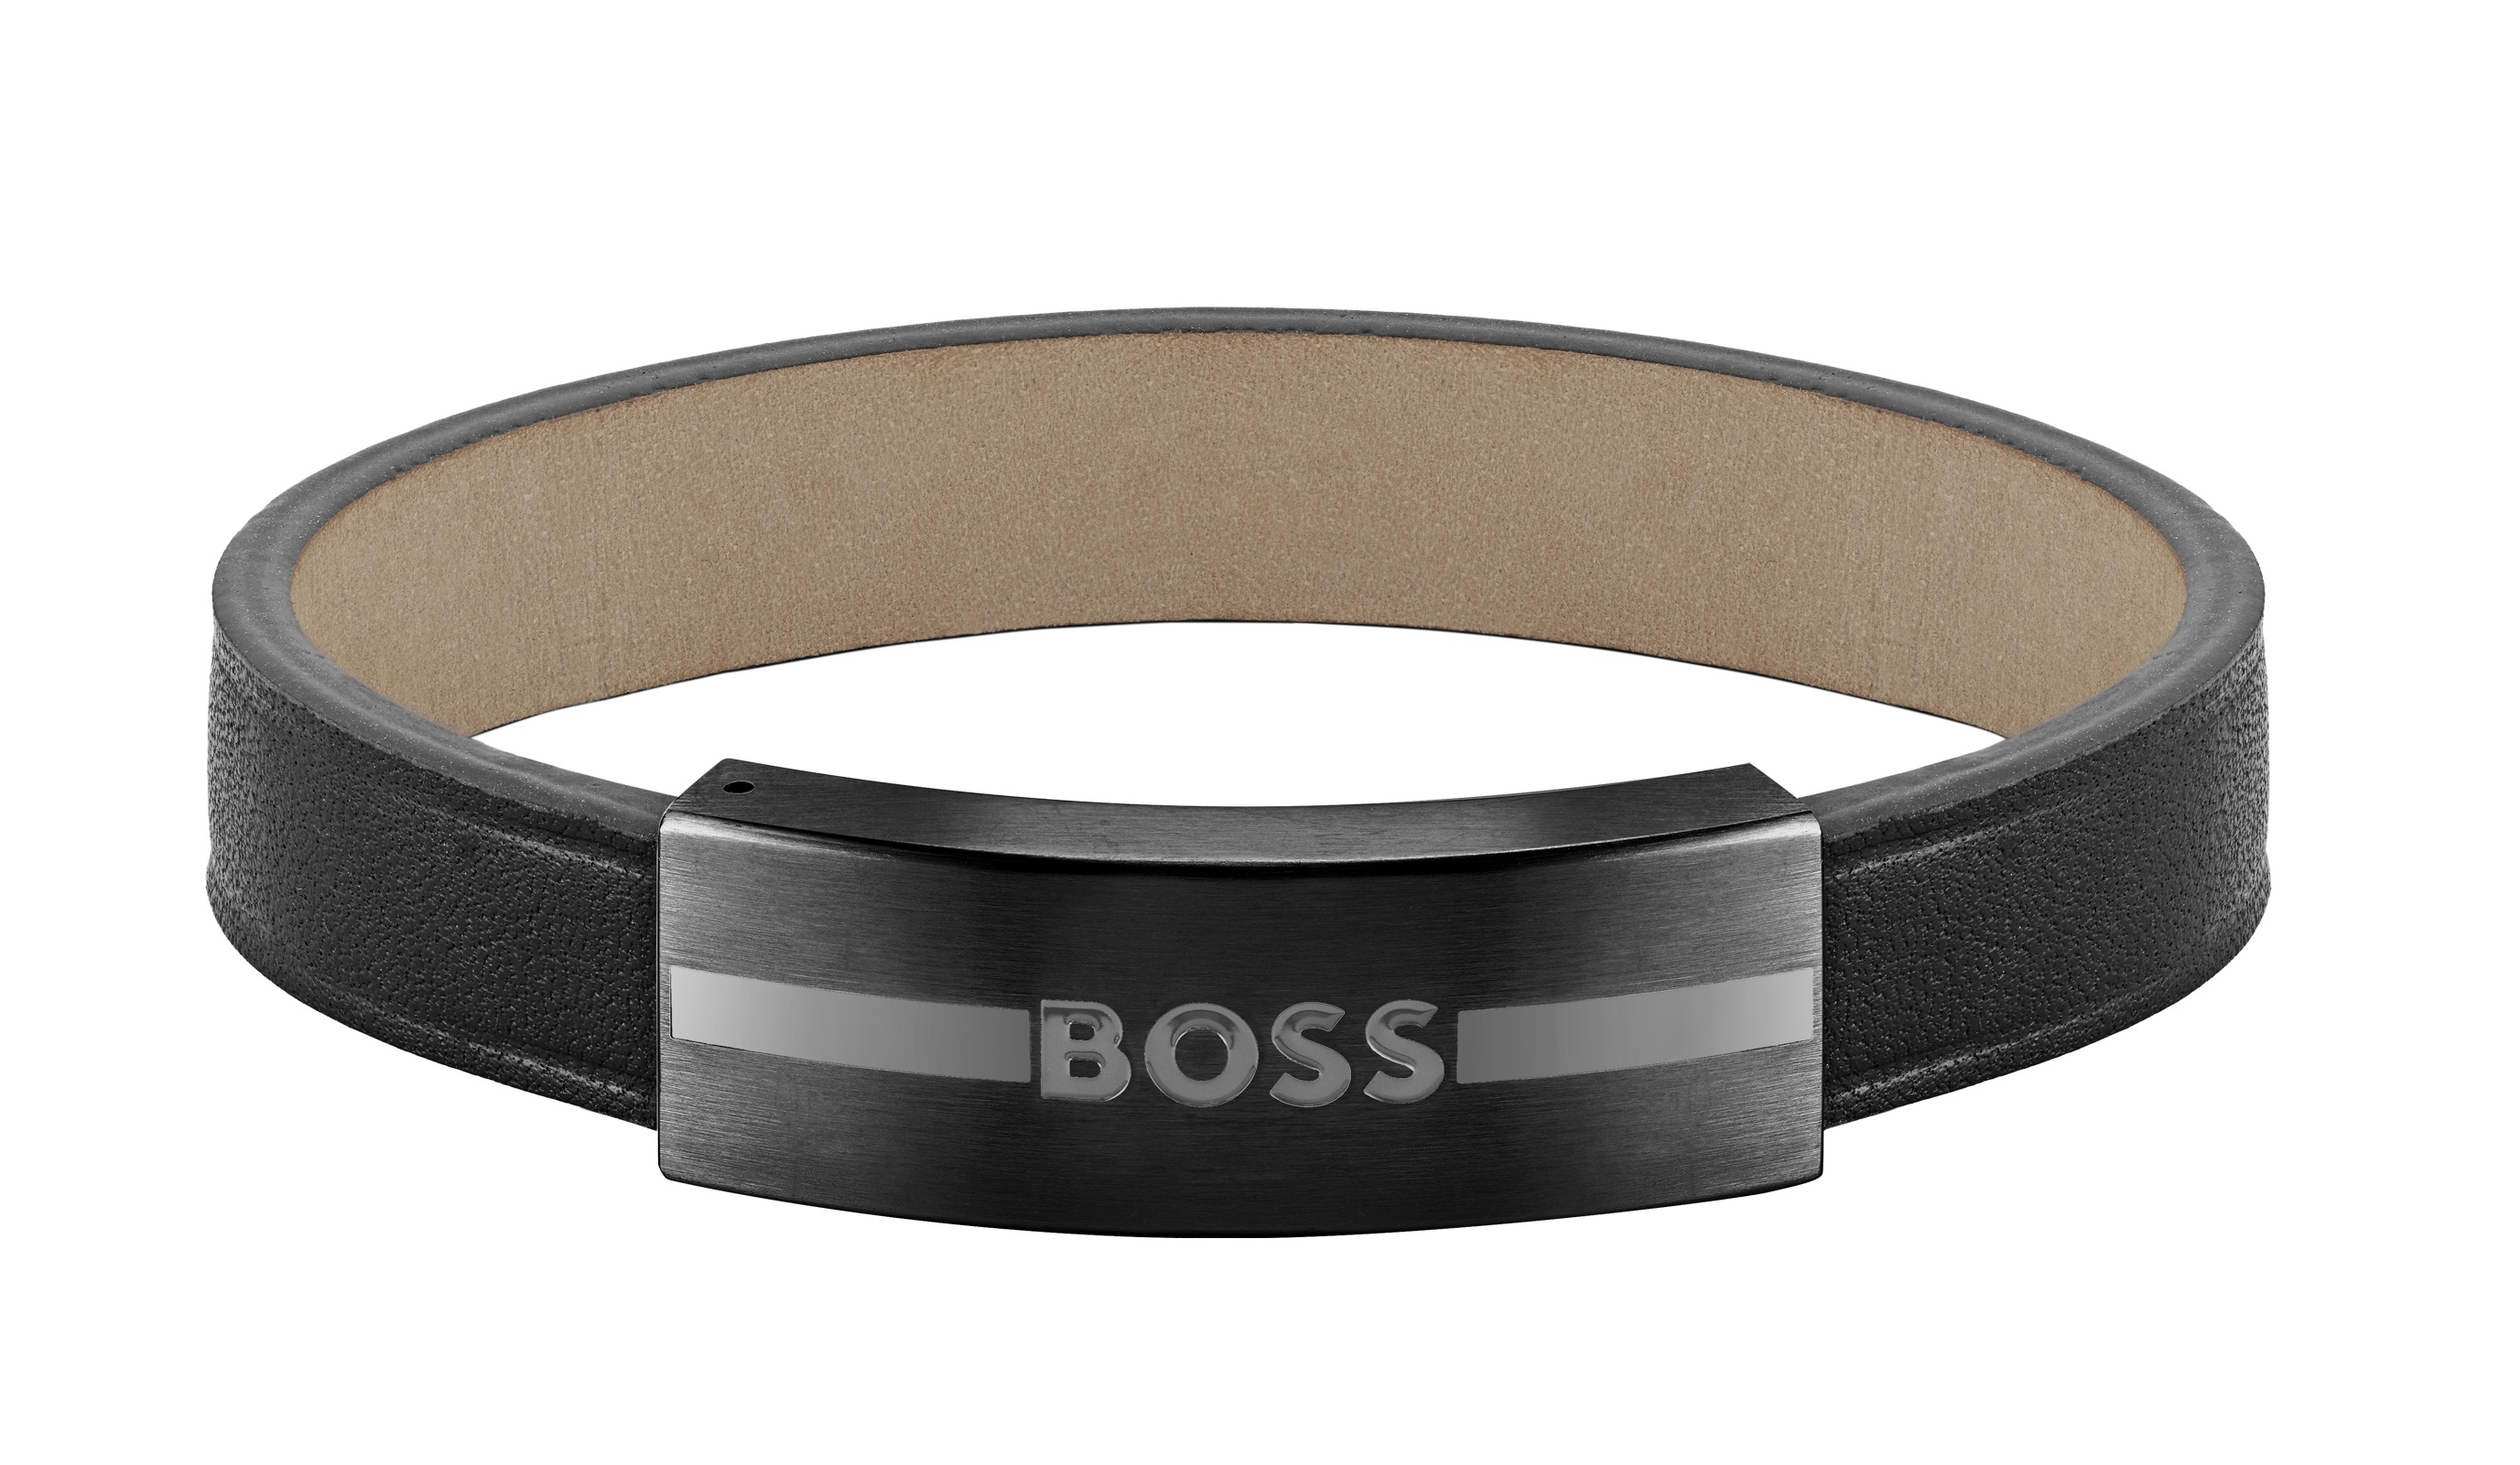 Hugo Boss Fashion kožený čierny náramok 1580490 19 cm